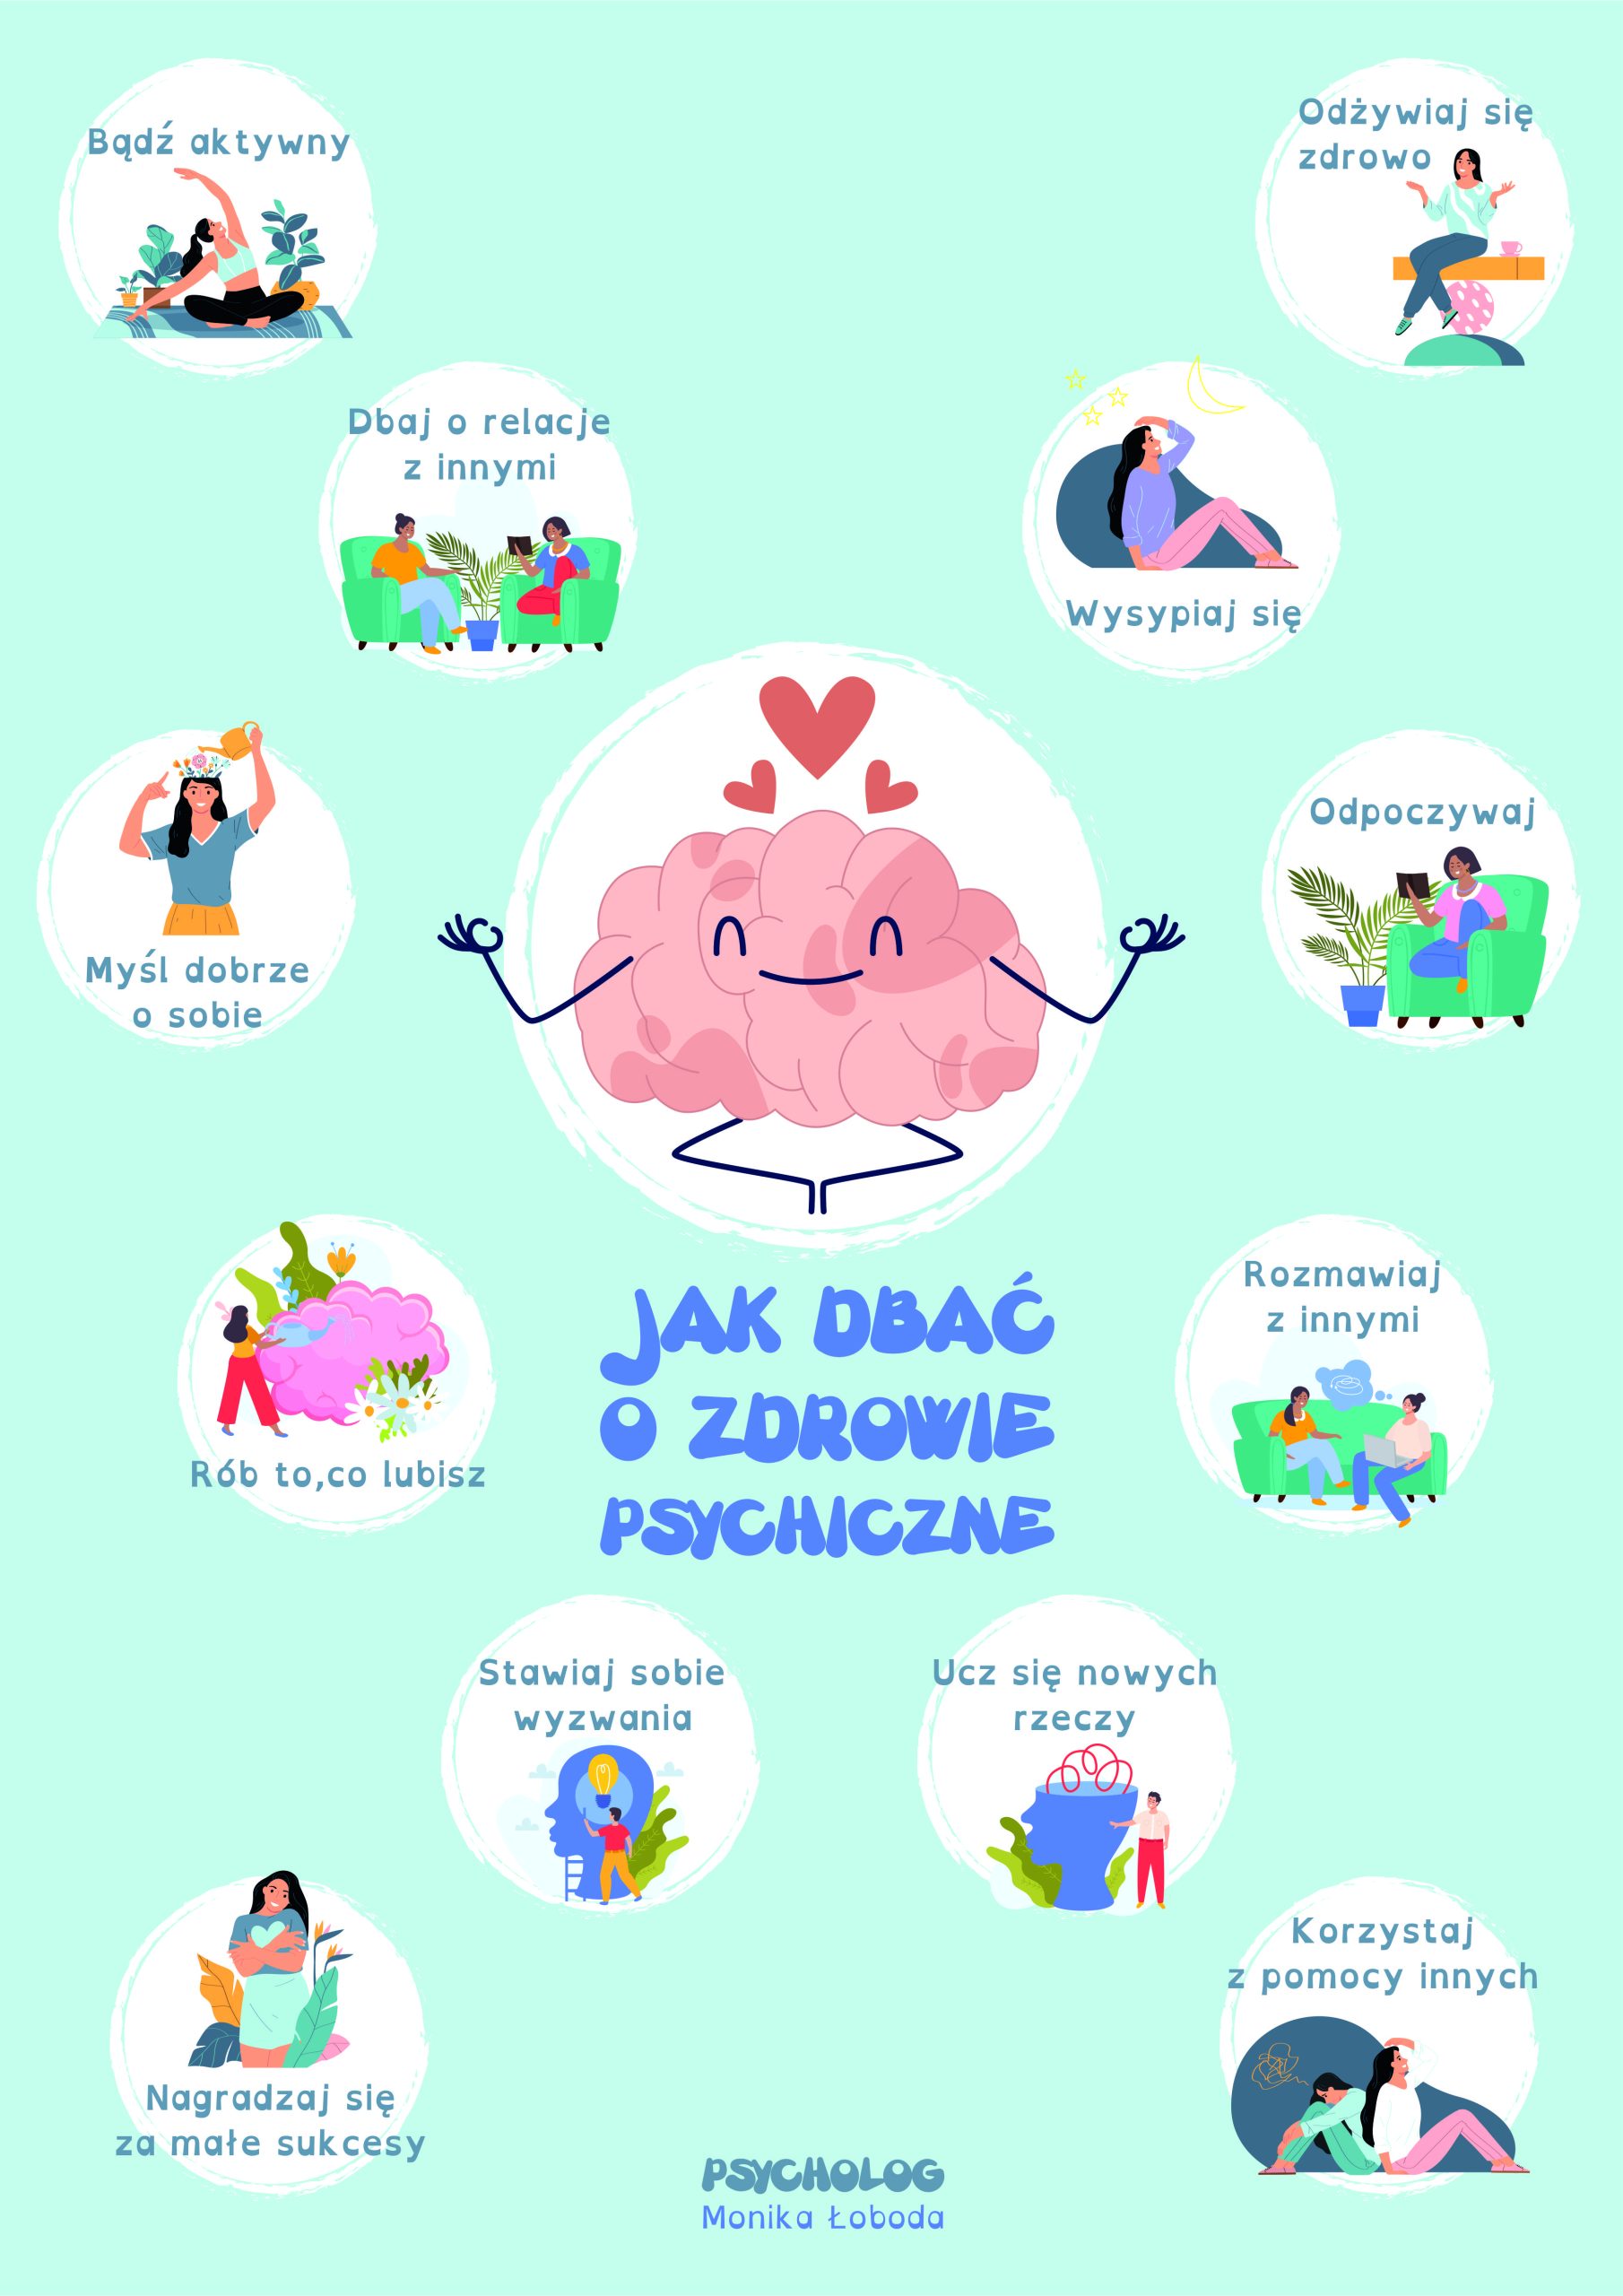 Plakat przedstawiający jak dbać o zdrowie psychiczne.